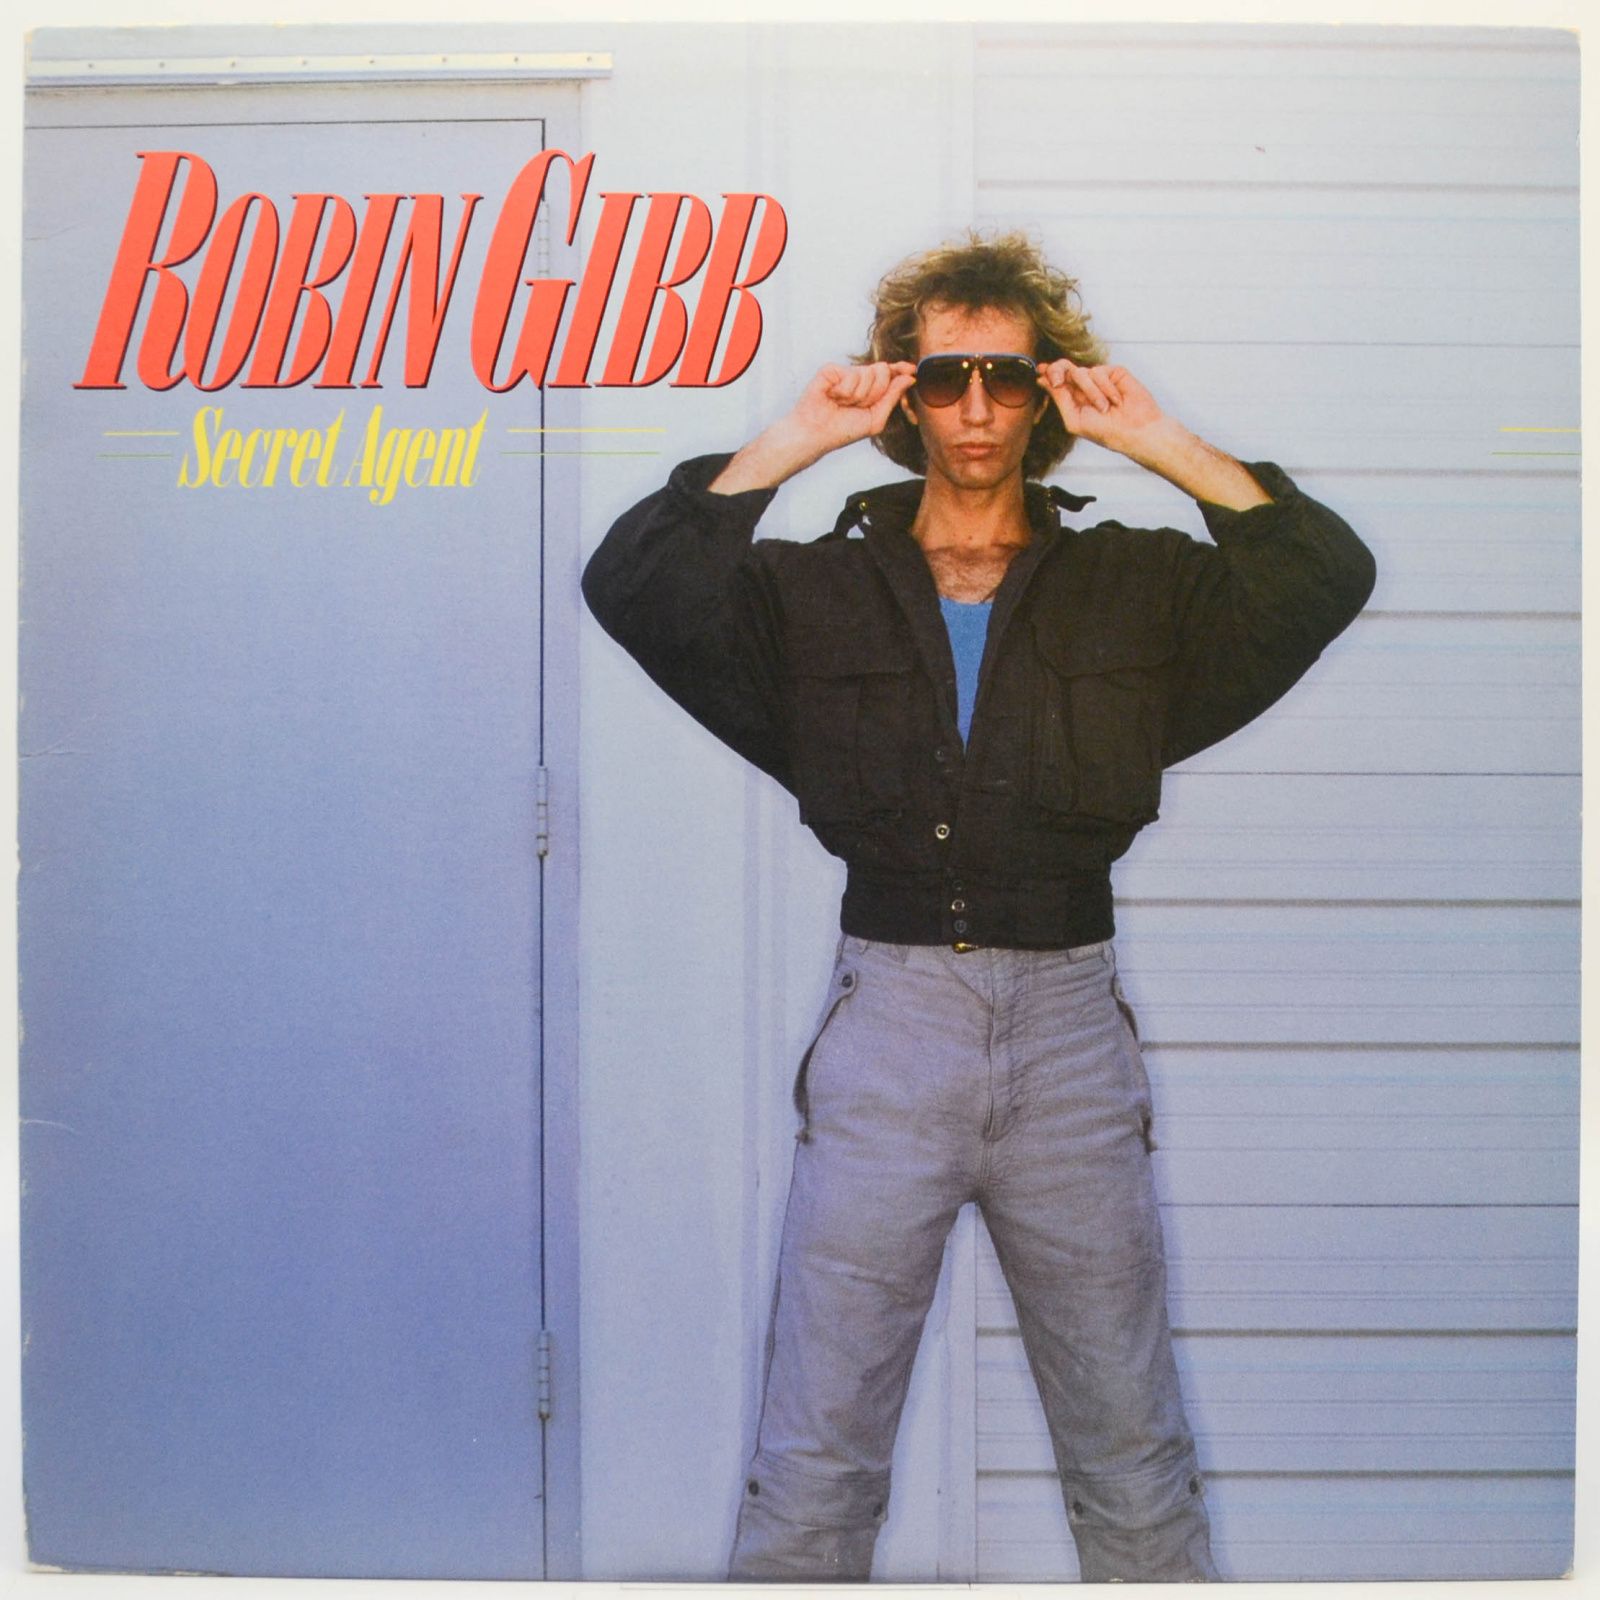 Robin Gibb — Secret Agent, 1984